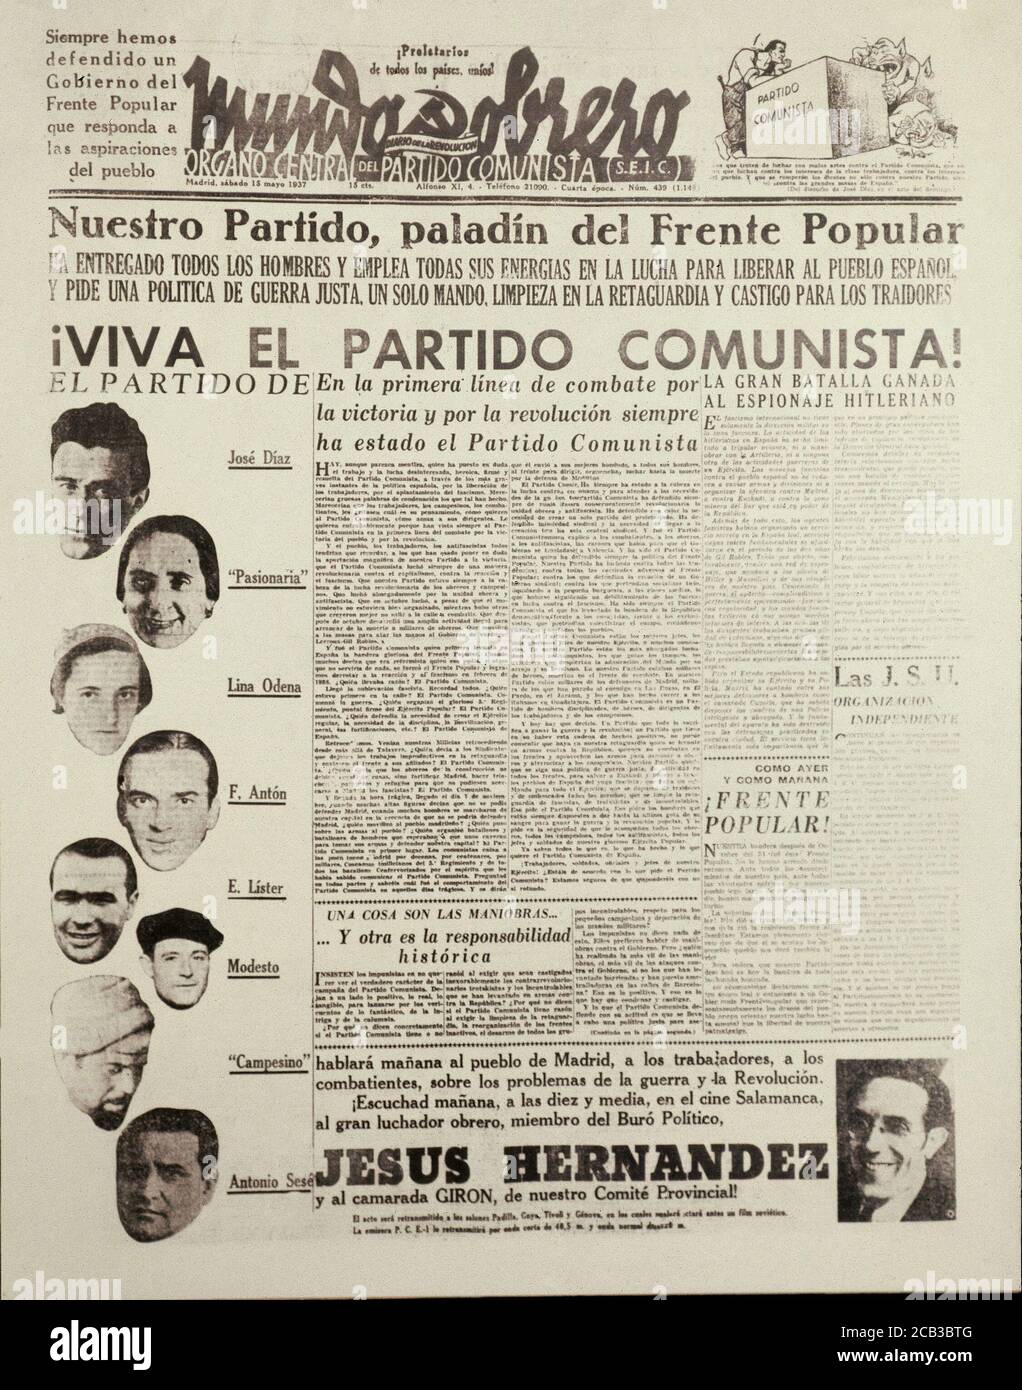 PERIODICO MUNDO OBRERO-15/5/1937 VIVA EL PARTIDO COMUNISTA! LA PASIONARIA Y OTROS DIRIGENTES. Location: HEMEROTECA MUNICIPAL. MADRID. SPAIN. ACKERMAN. LA PASIONARIA. Modestus. DOLORES IBARRURI. DIAZ JOSE. ODENA LINA. ANTON F. LISTER ENRIQUE. SESE ANTONIO. HERNANDEZ JESUS. Stock Photo